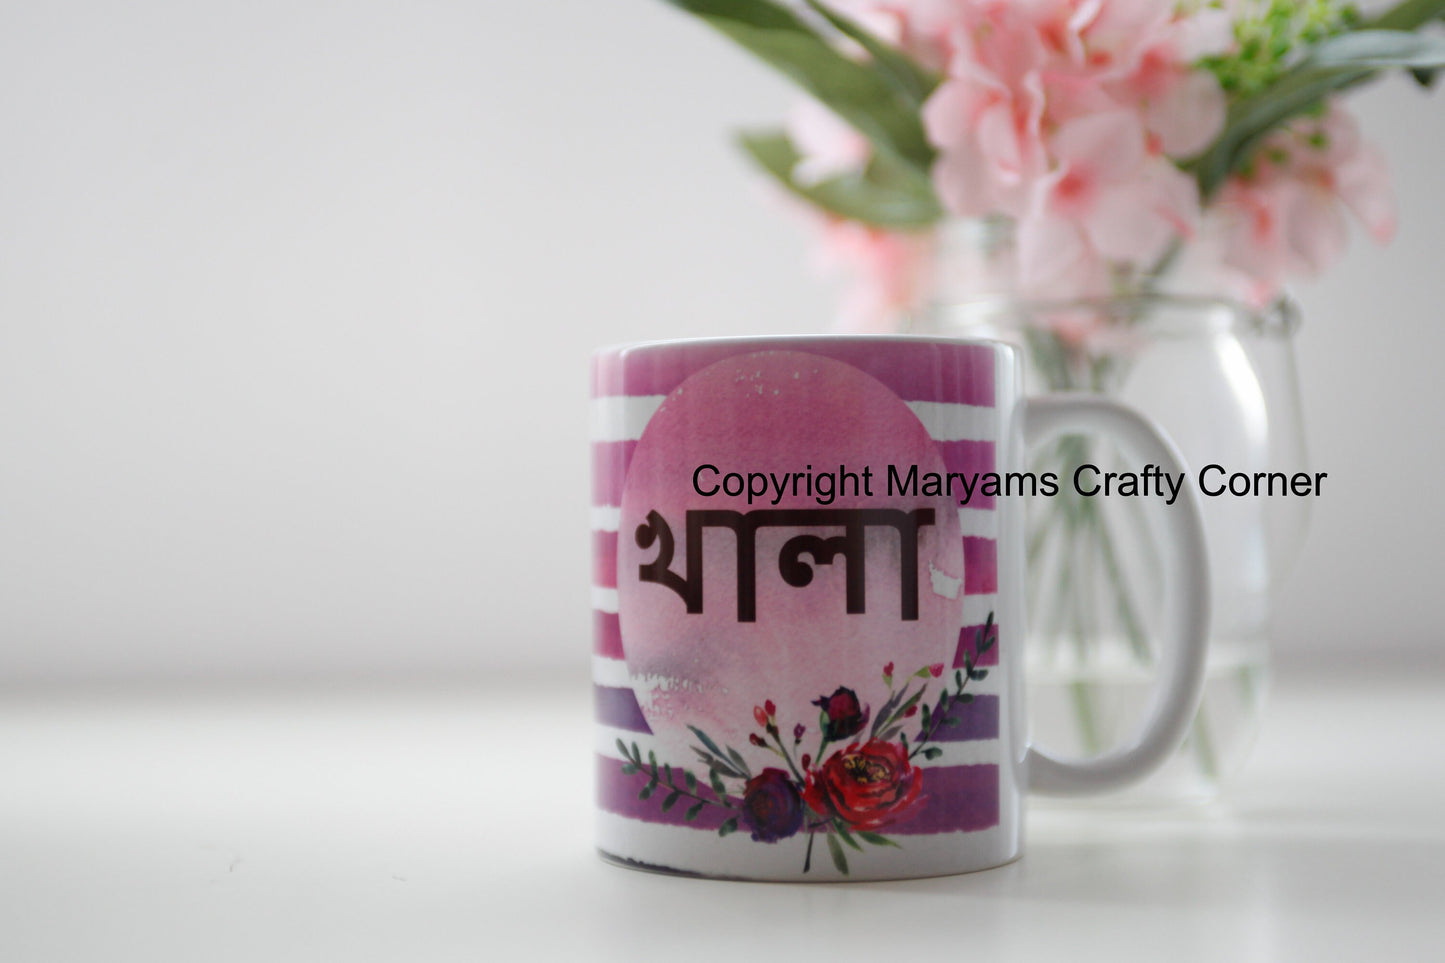 Bengali Mug, Khala Mug, Muslim Mug, Eid Mug, Personalised Mug, Arabic Mug, Muslimah Mug, Arabian Mug, Ramadan Mug, Coffee Tea Mug